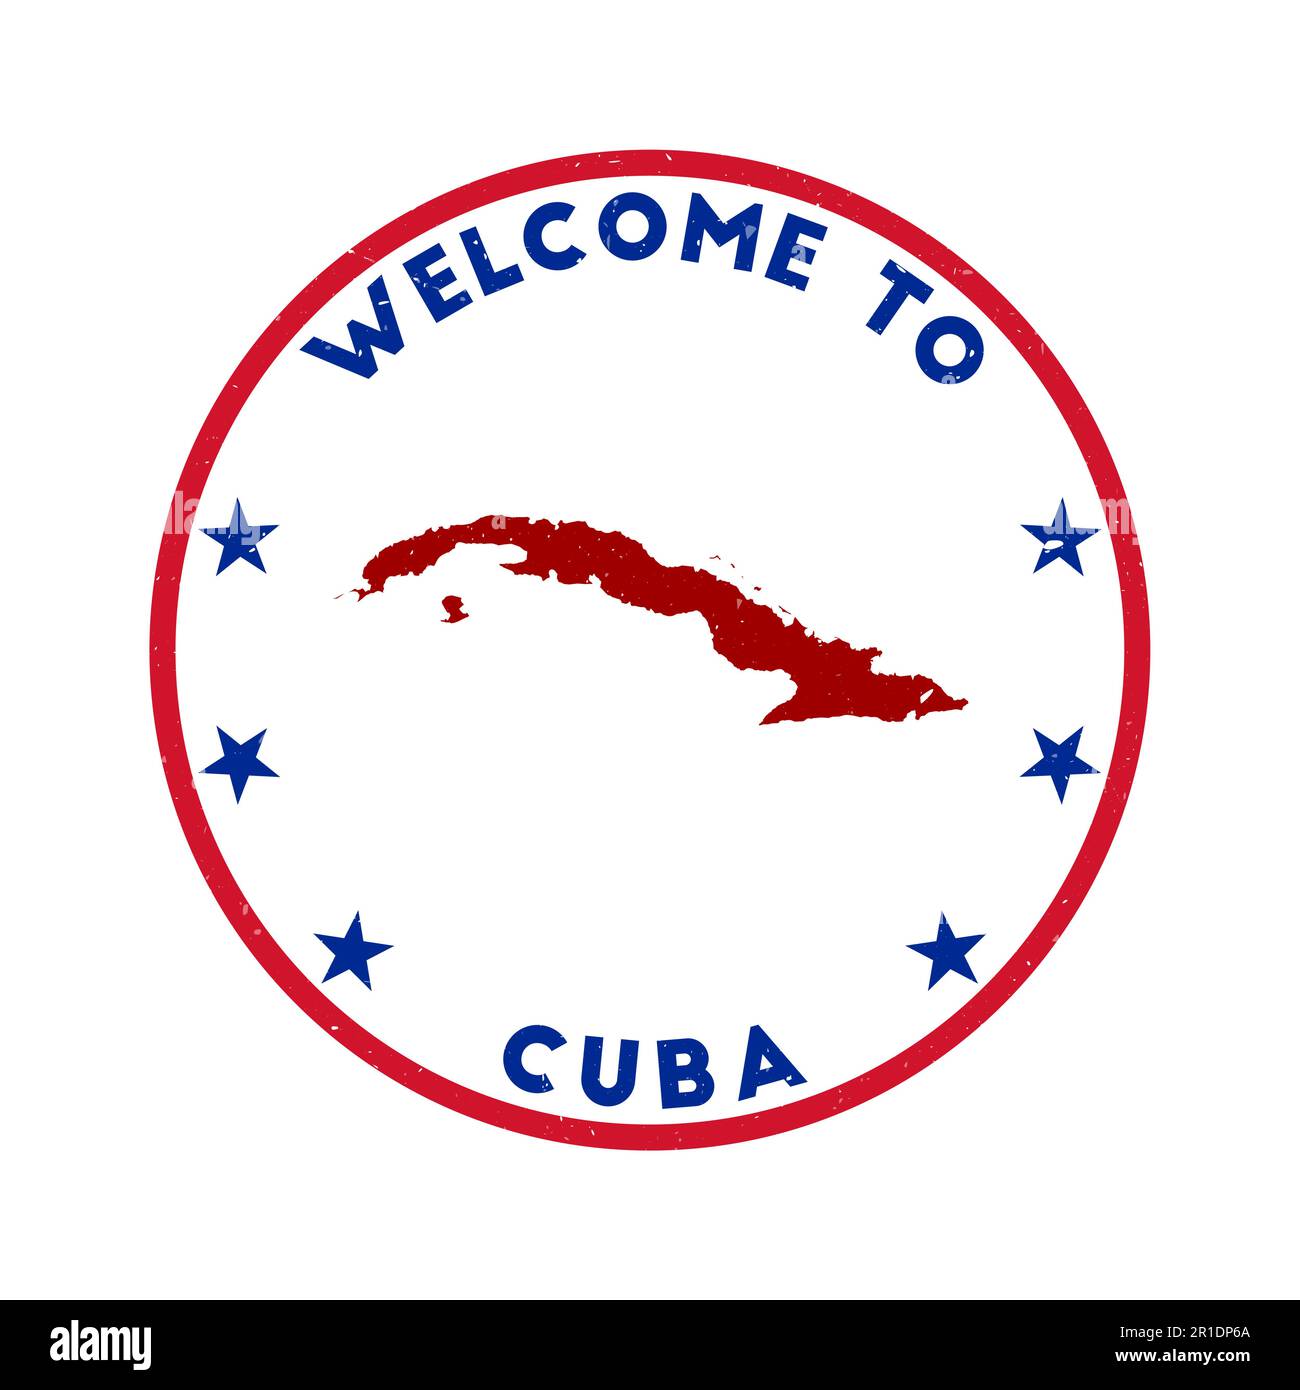 Willkommen auf Kuba. Grunge Country Rundstempel mit Textur im Farbdesign Lost in Heaven. Geometrisches Kuba-Siegel im Vintage-Stil. Moderner Vektorillustr Stock Vektor